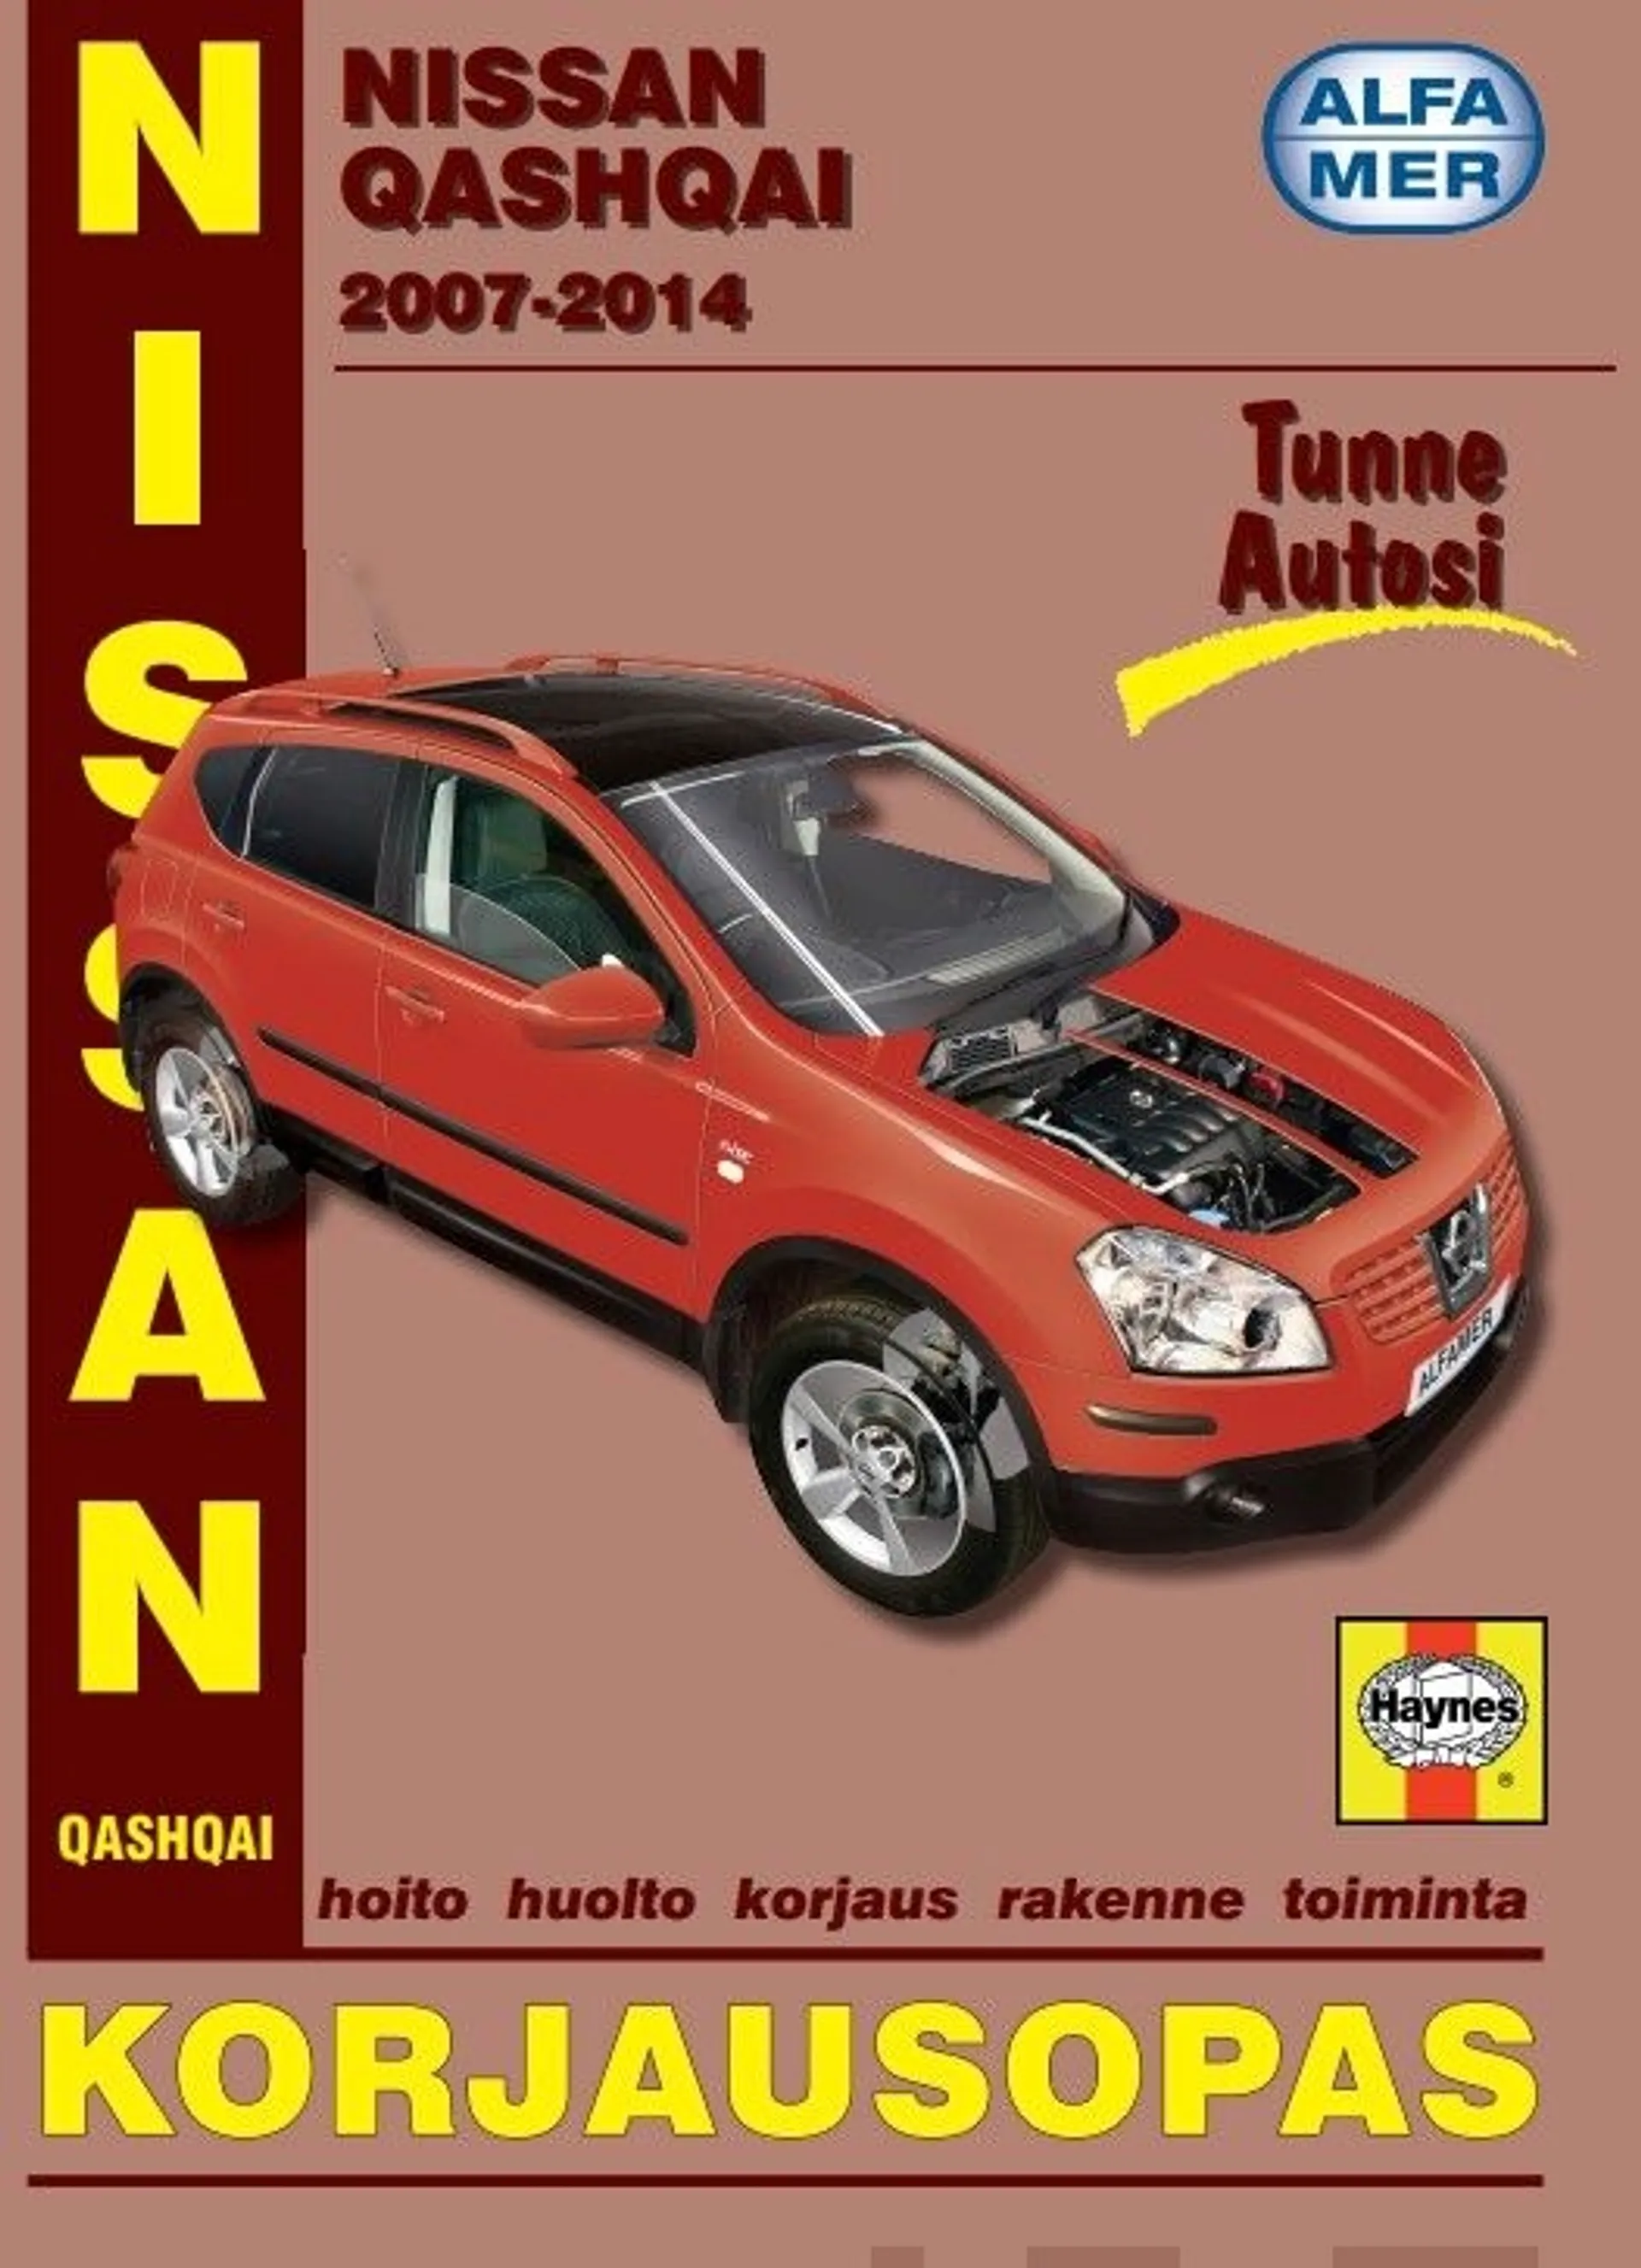 Mauno, Nissan Qashqai 2007-2014